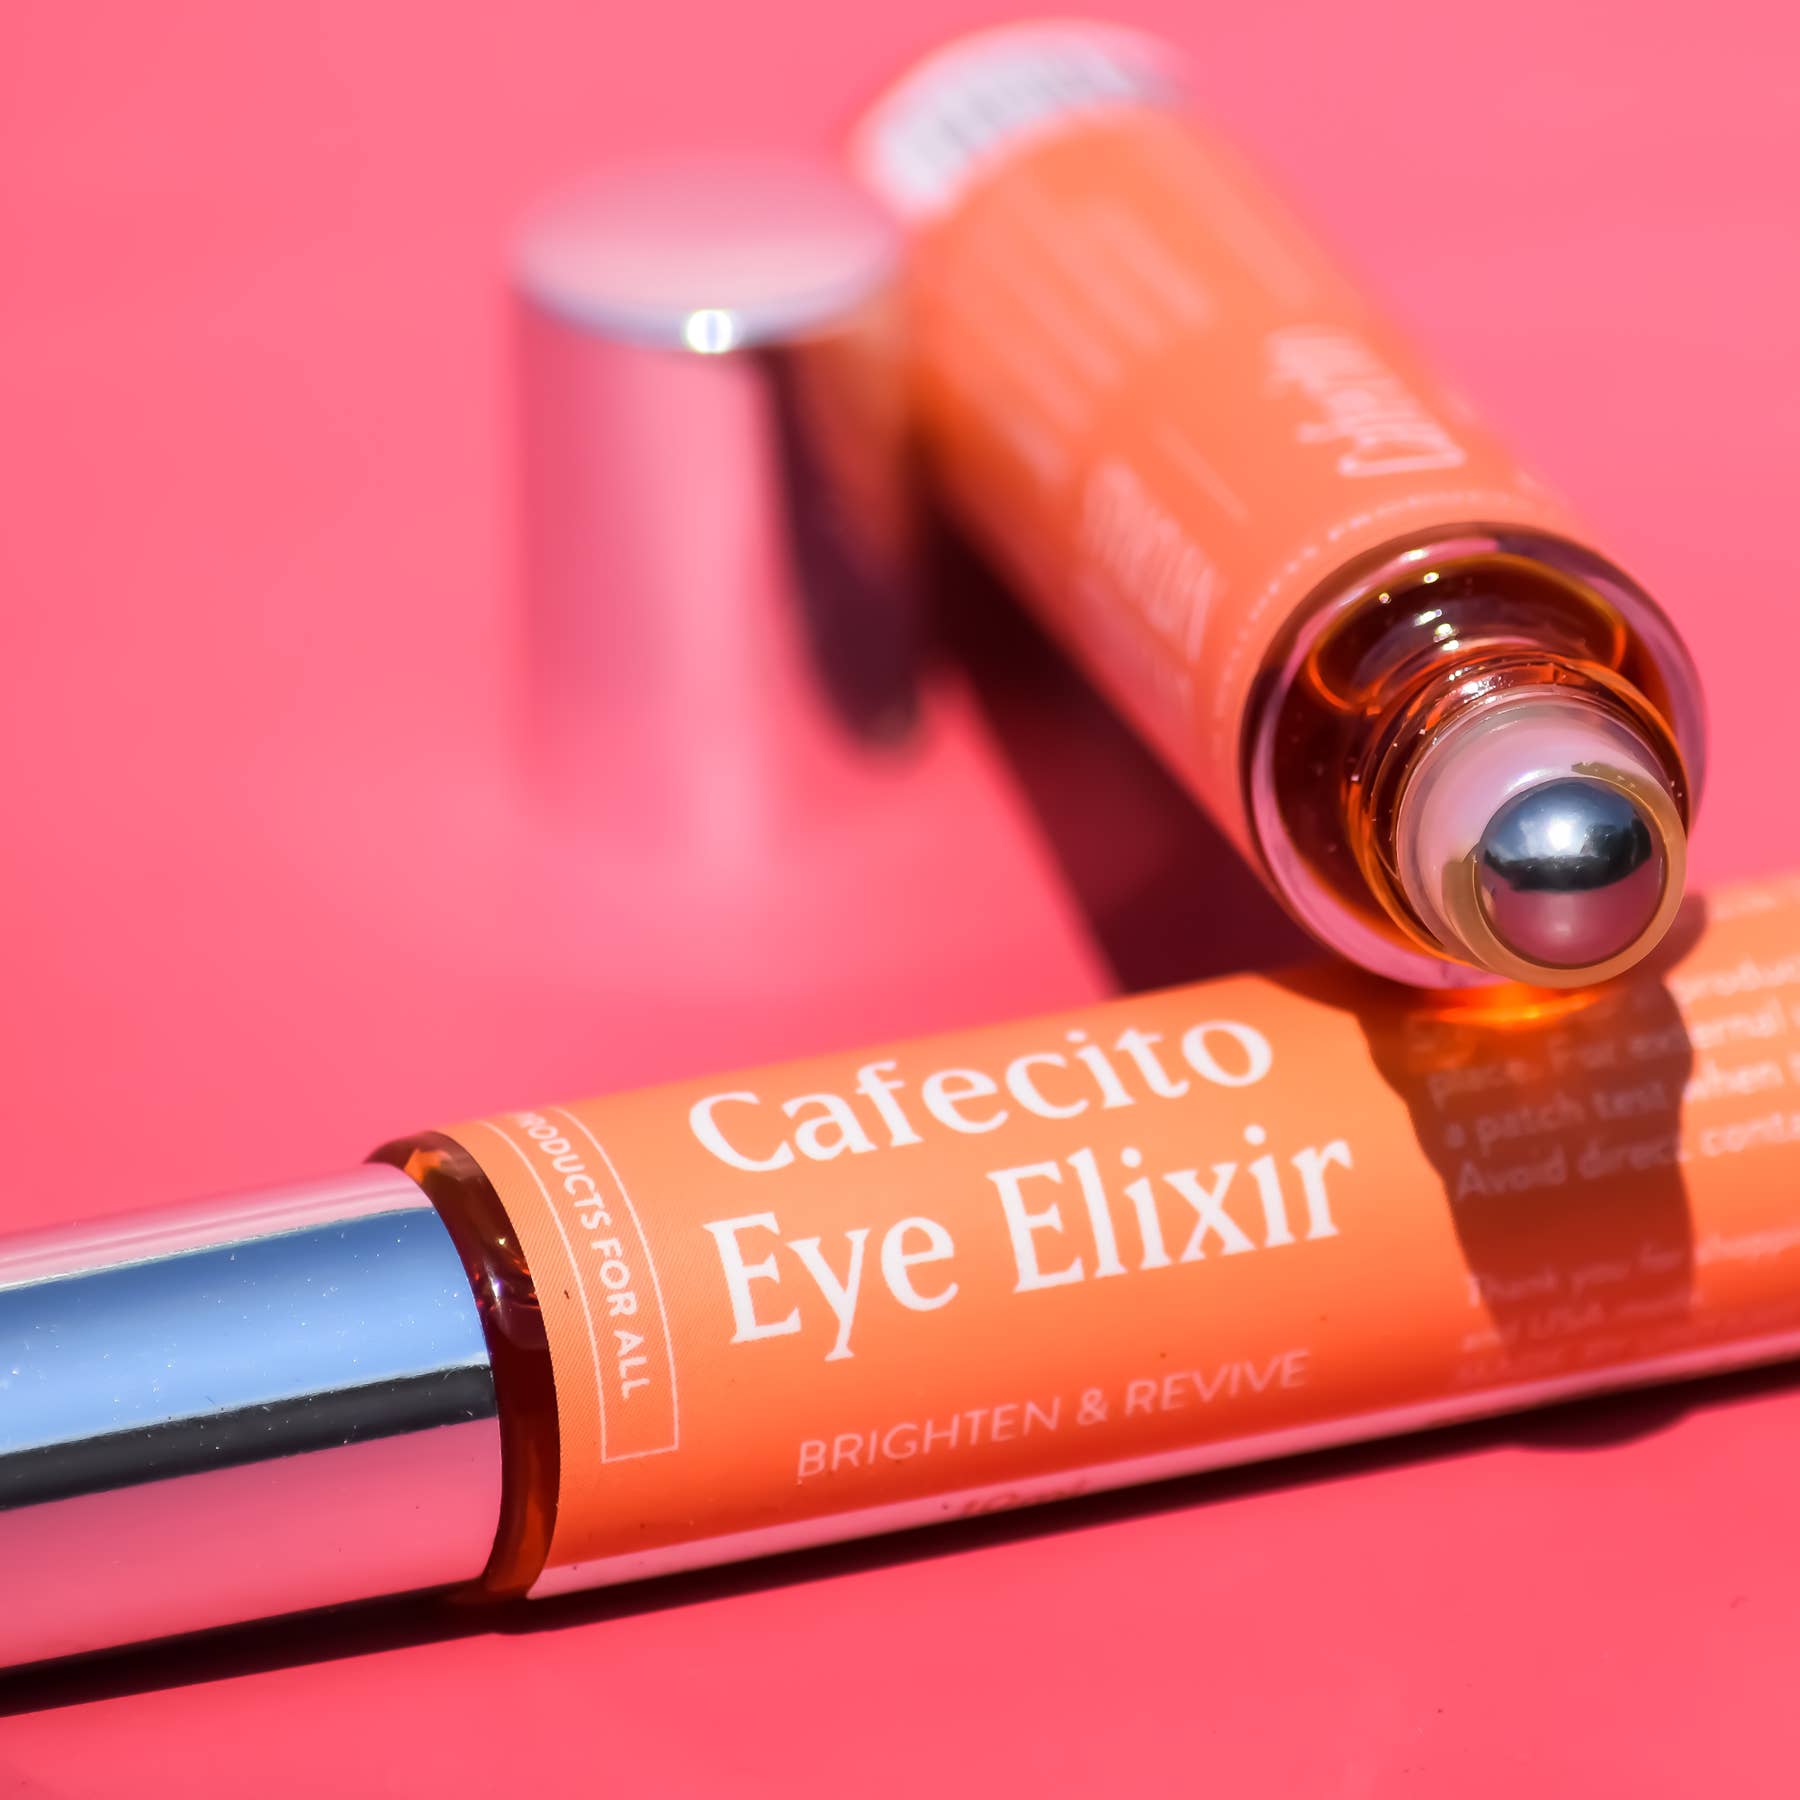 Eye Elixir with Caffeine